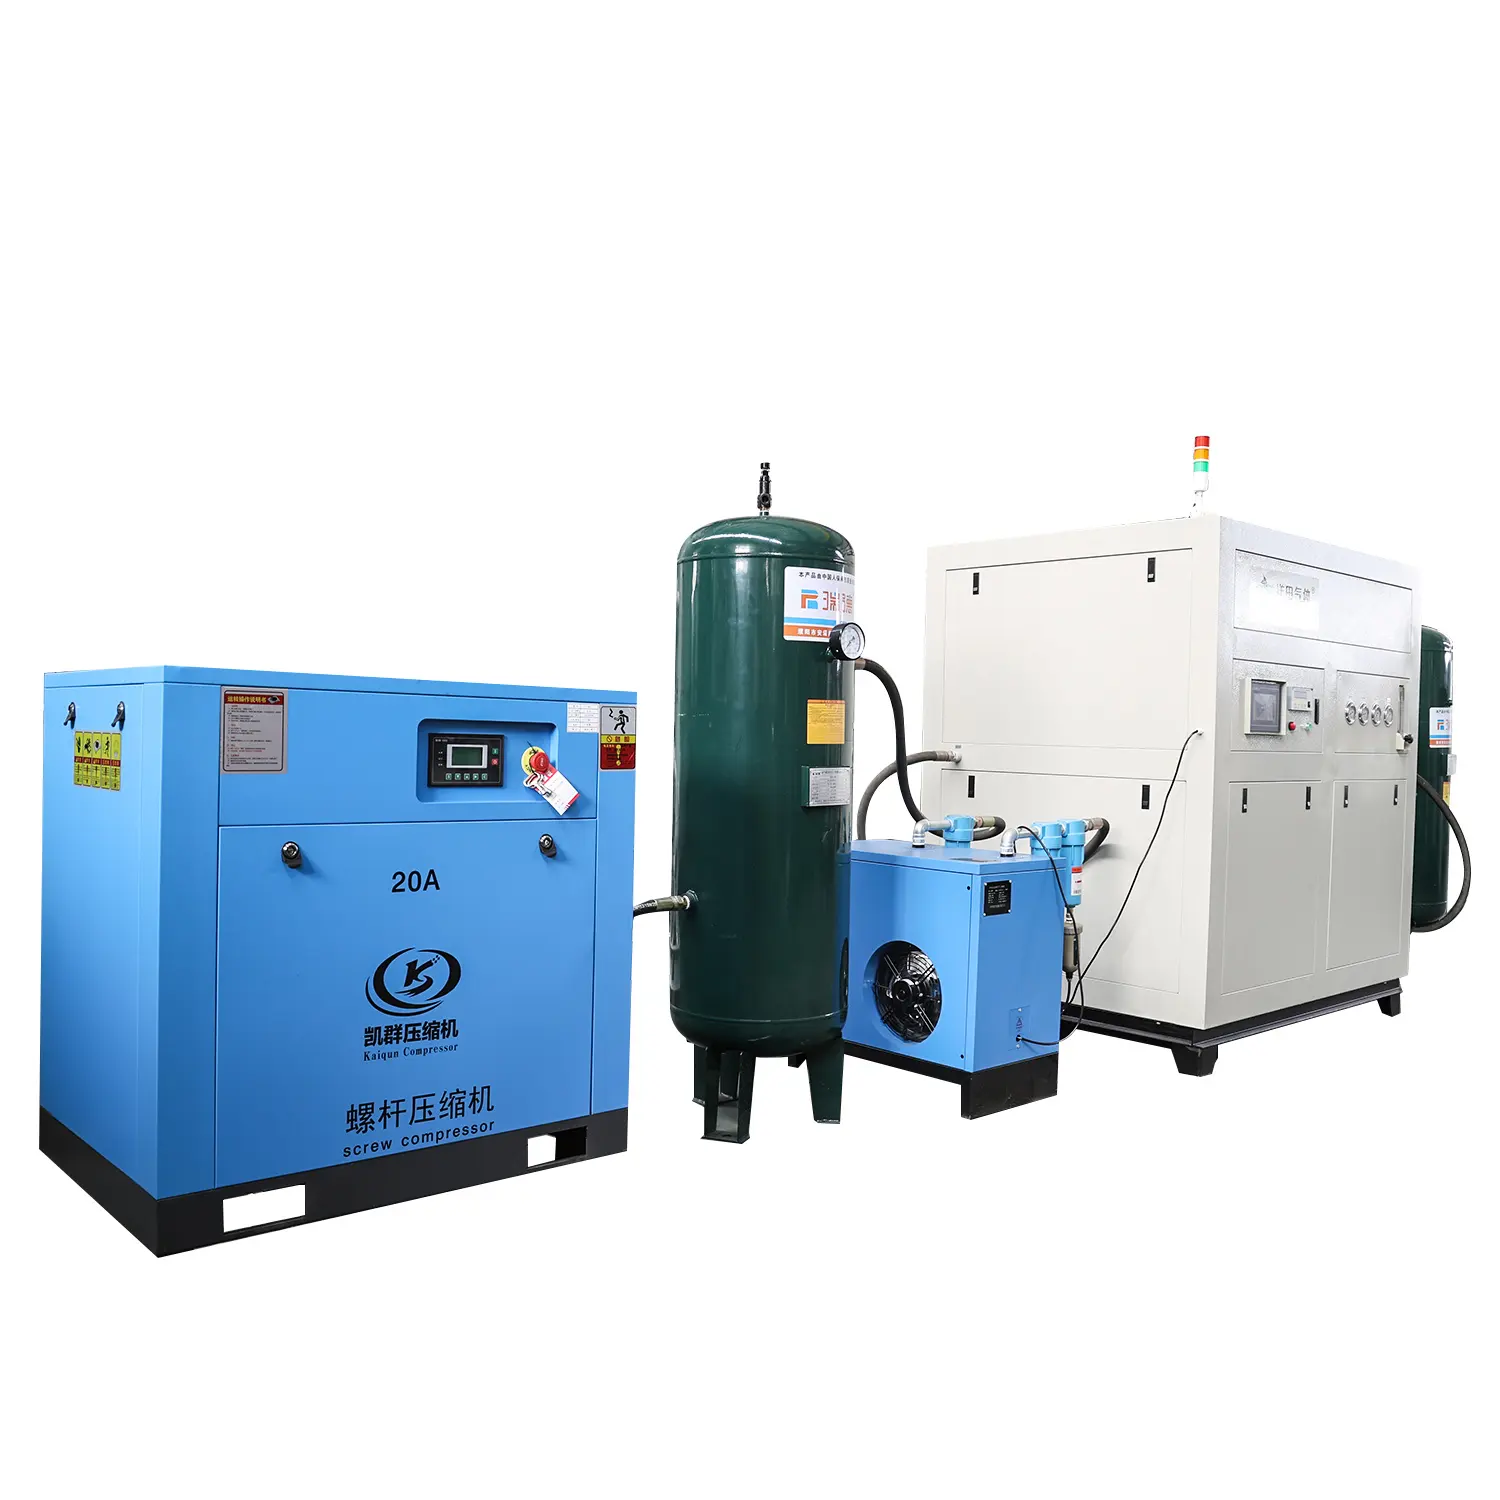 Compressor de ar de alta pressão Yangtian 200Bar, com o impulsionador de hidrogênio de fácil operação, livre de óleo